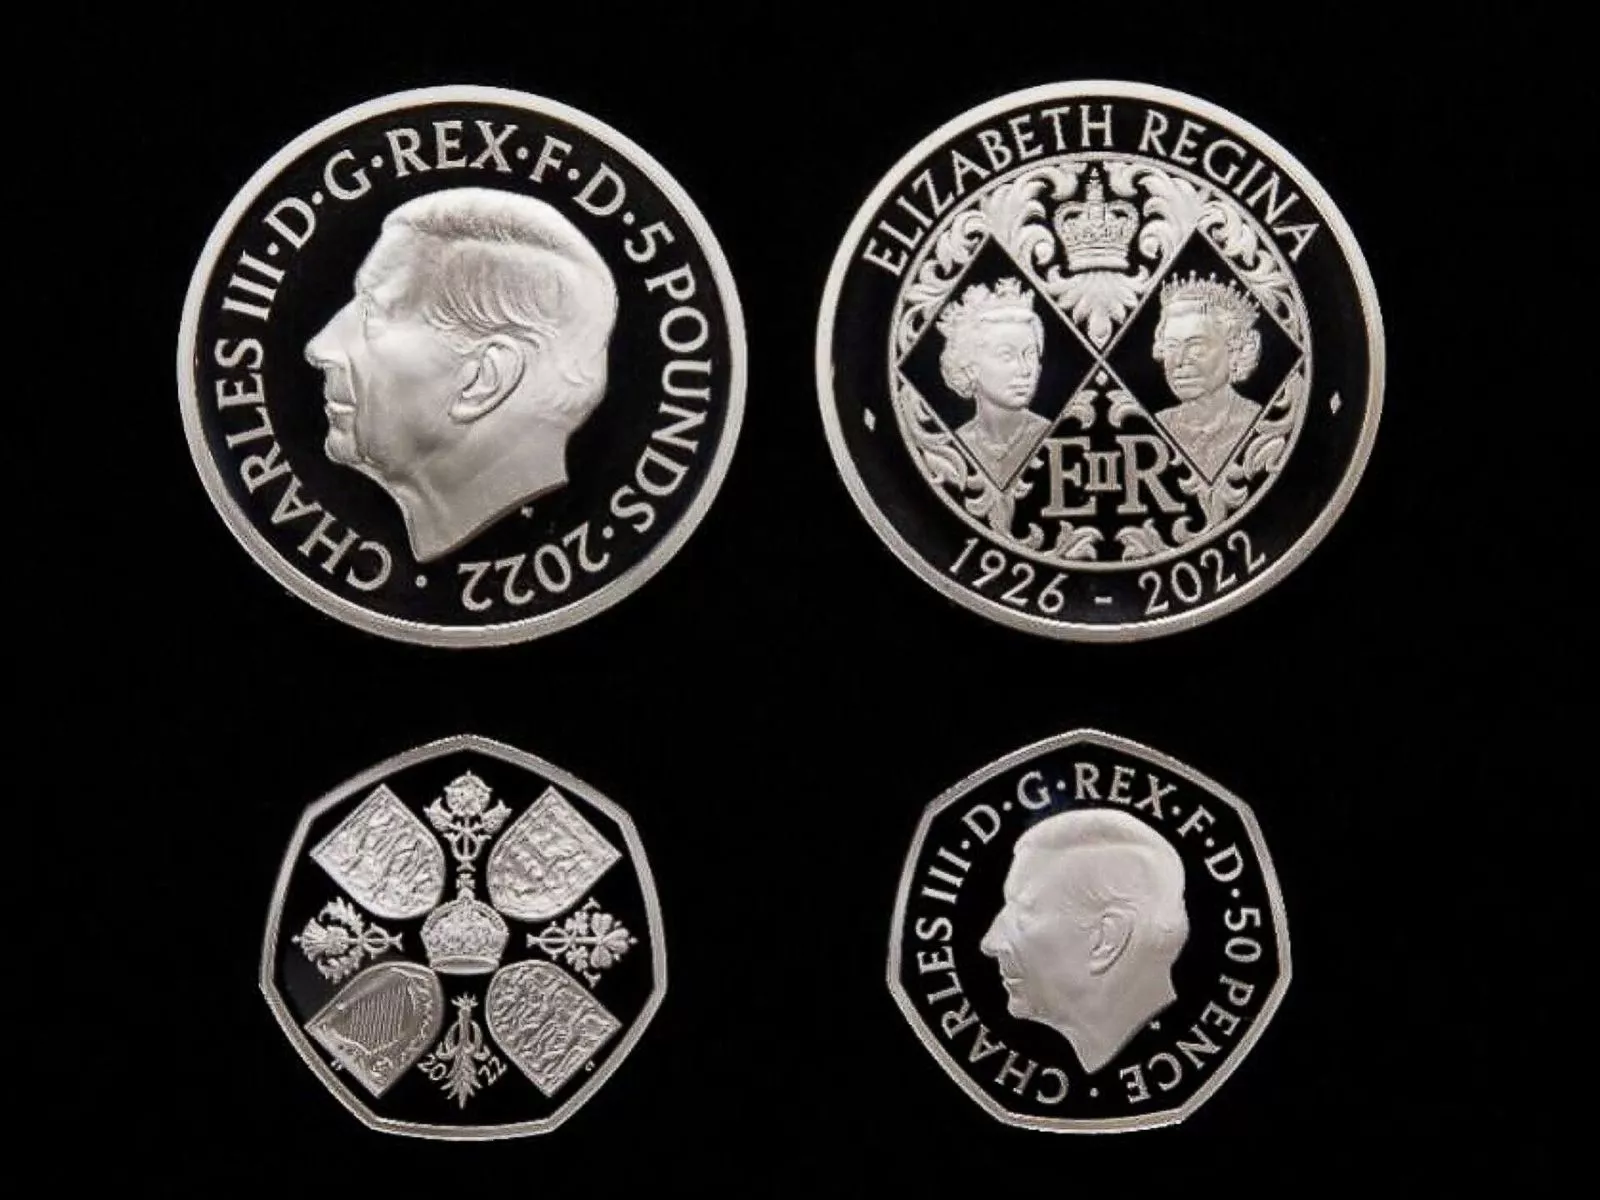 Королевский монетный двор представил новую памятную монету с портретом Карла III, фото 3